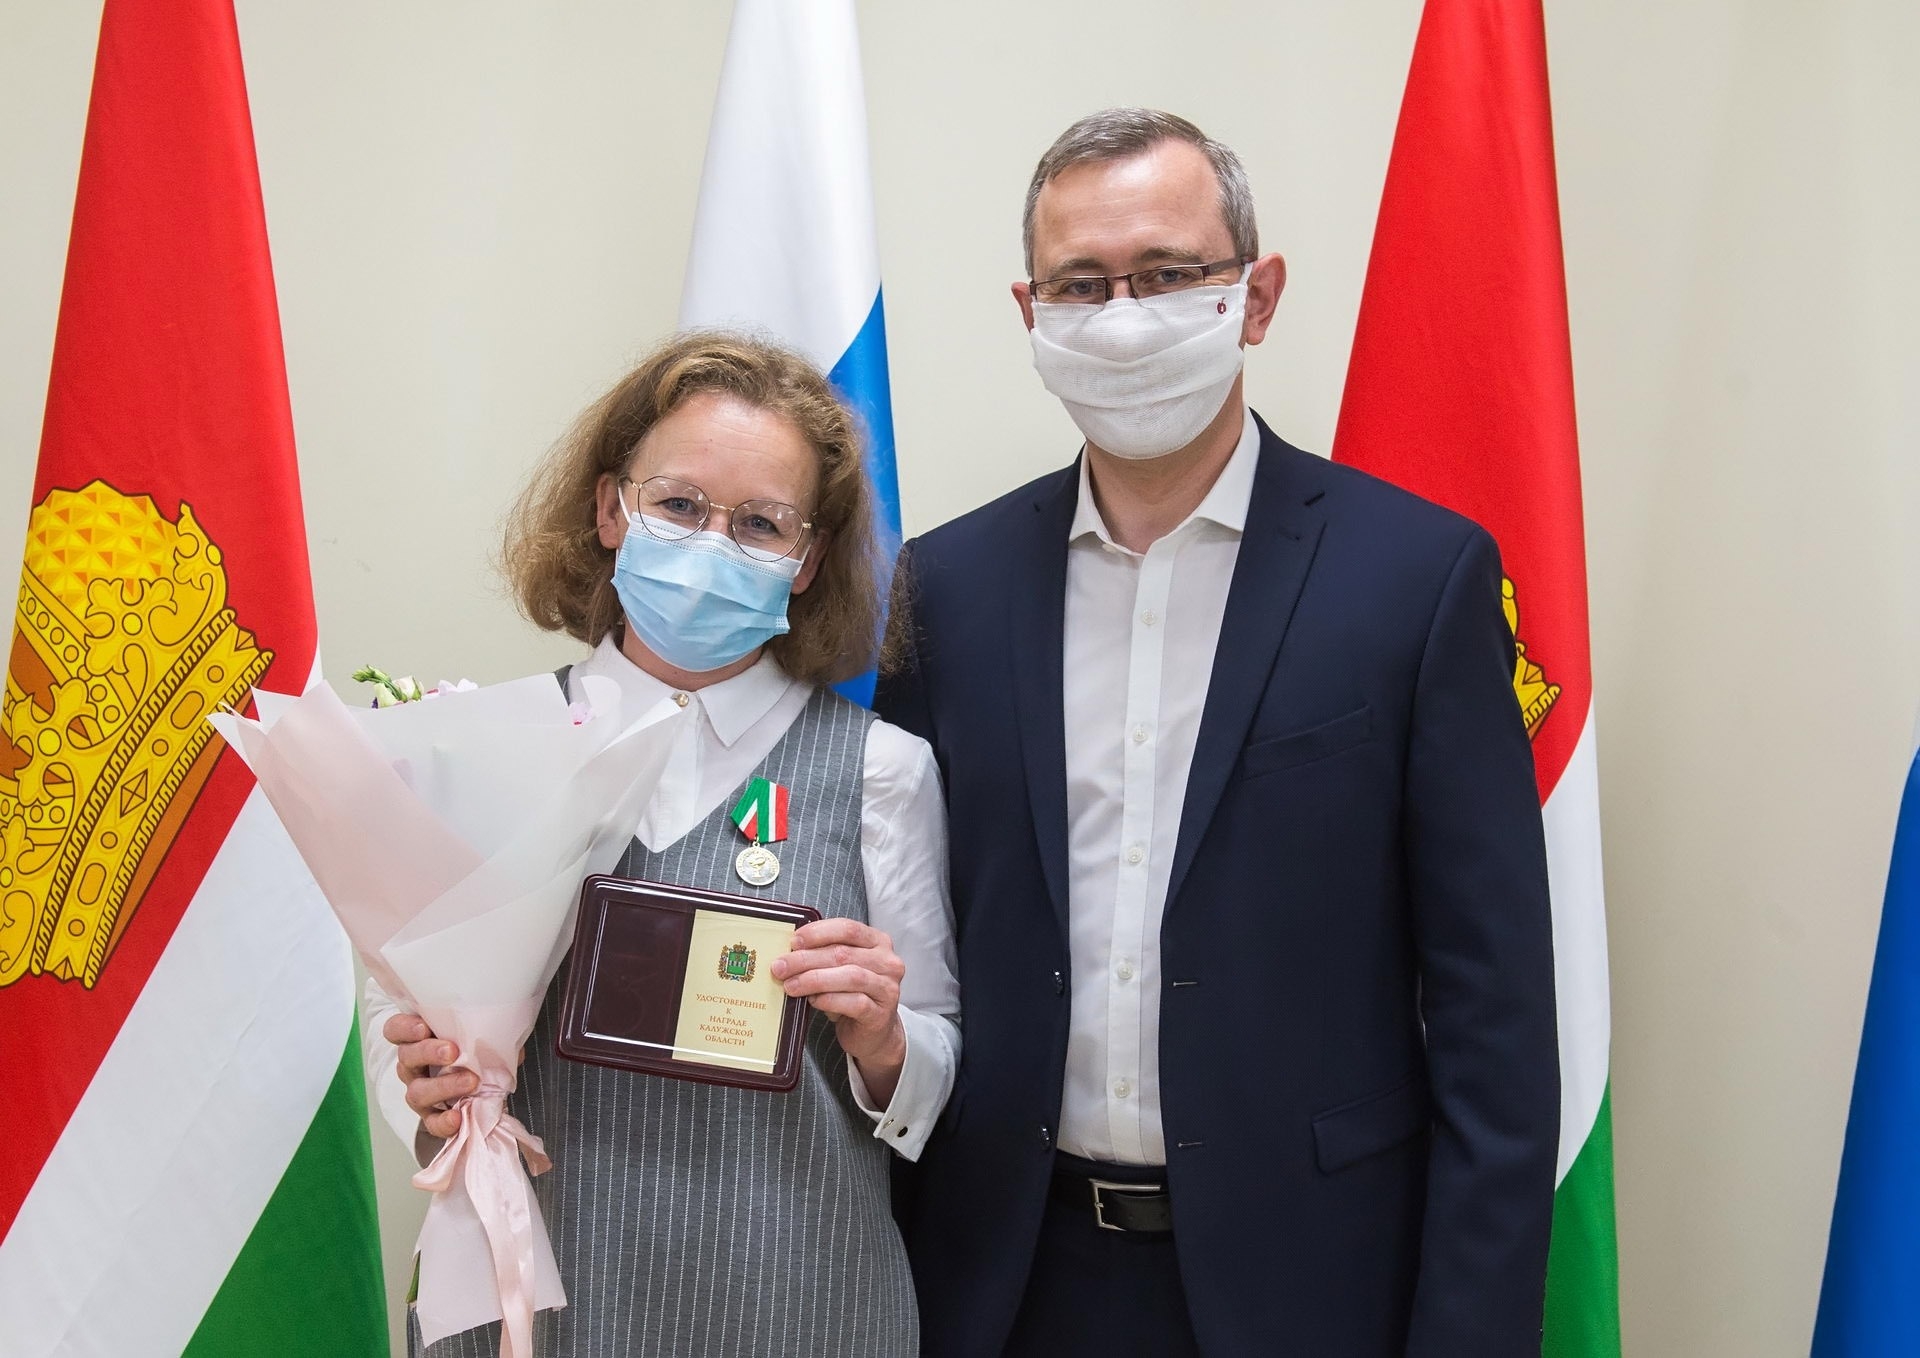 Награды за медицинскую доблесть при борьбе с COVID-19 вручили в Калужской области